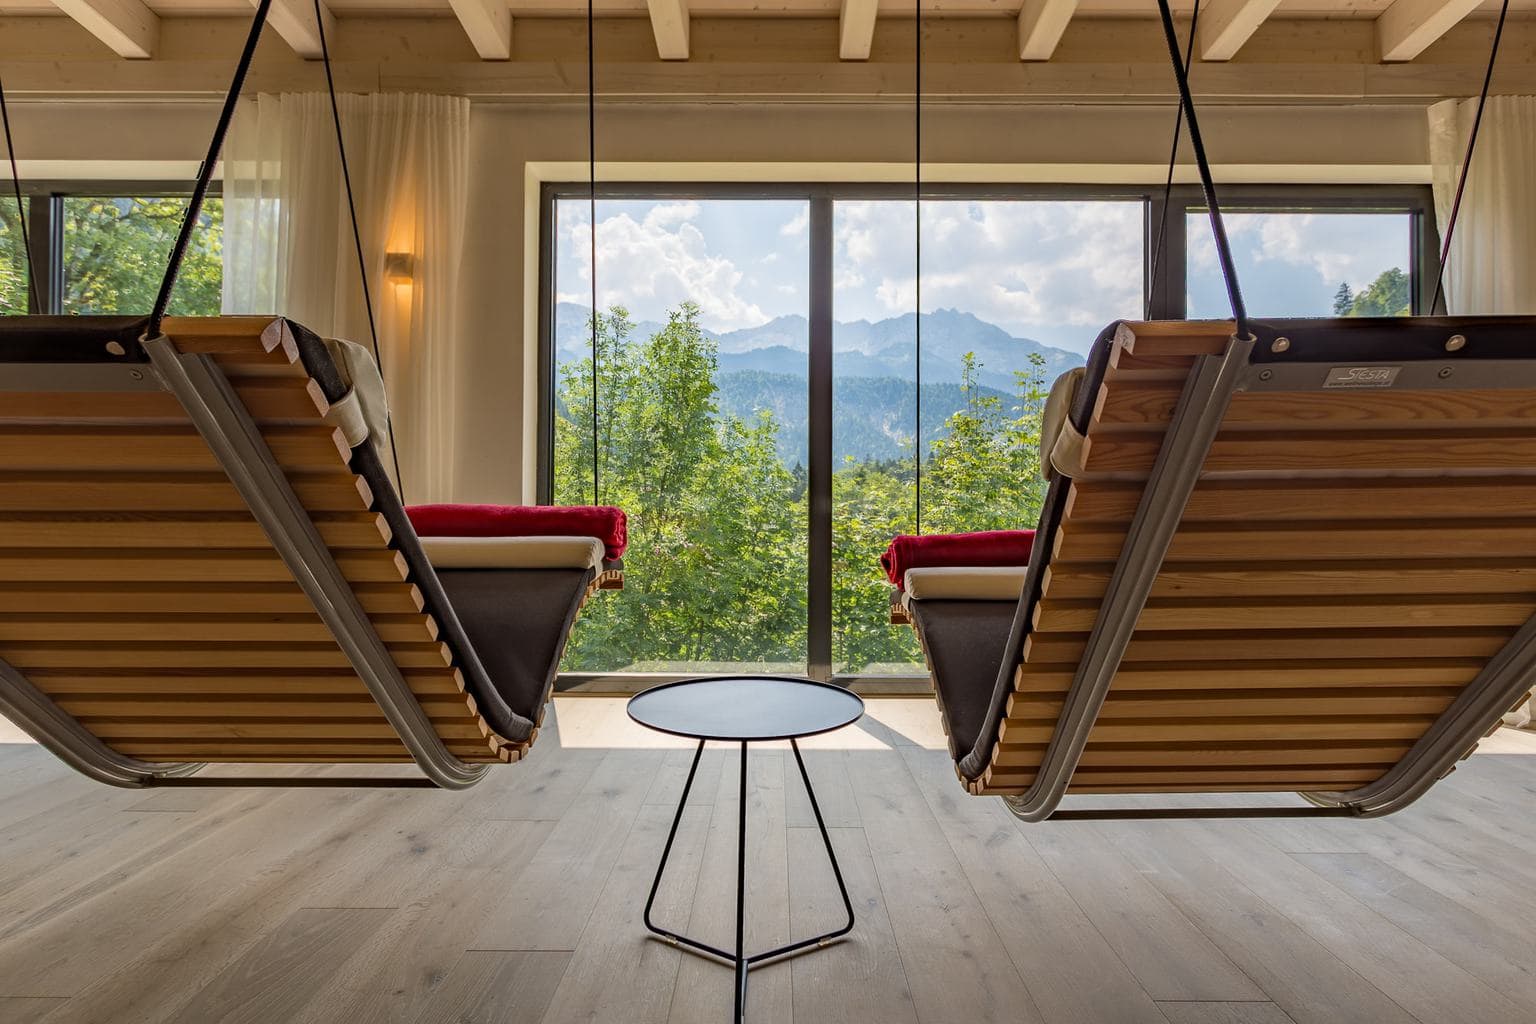 Rustruimte in Hotel Das Graseck in Garmisch met uitzicht op de bergen